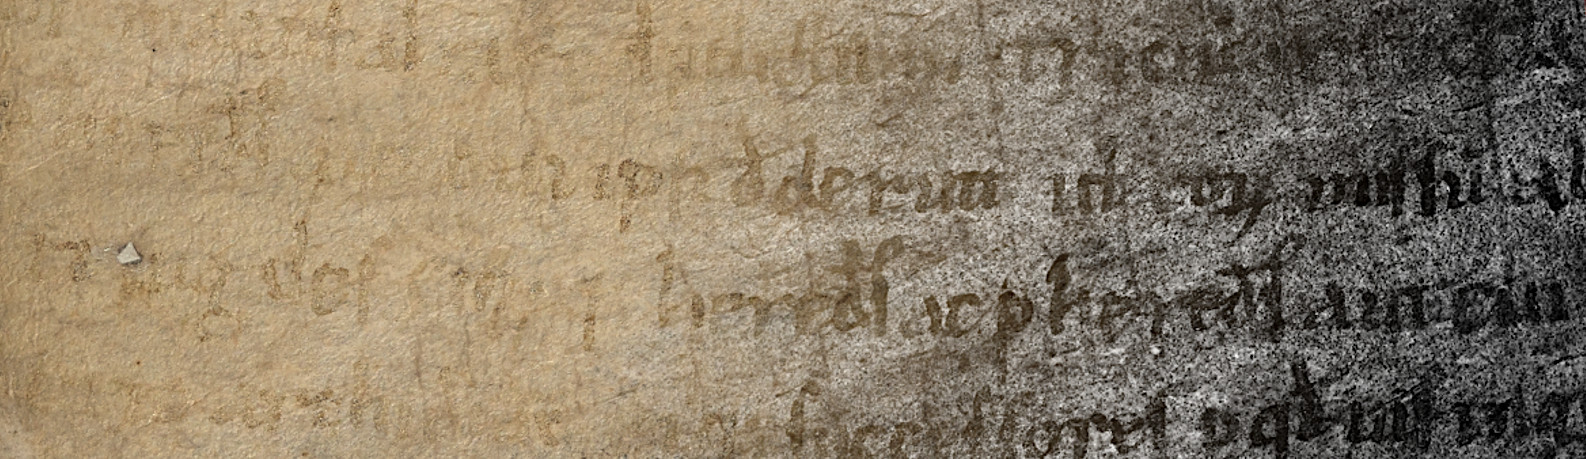 Immagine che mostra una pergamena alla luce visibile e ultravioletta riflessa ed il testo che diventa leggible con quest'ultima.